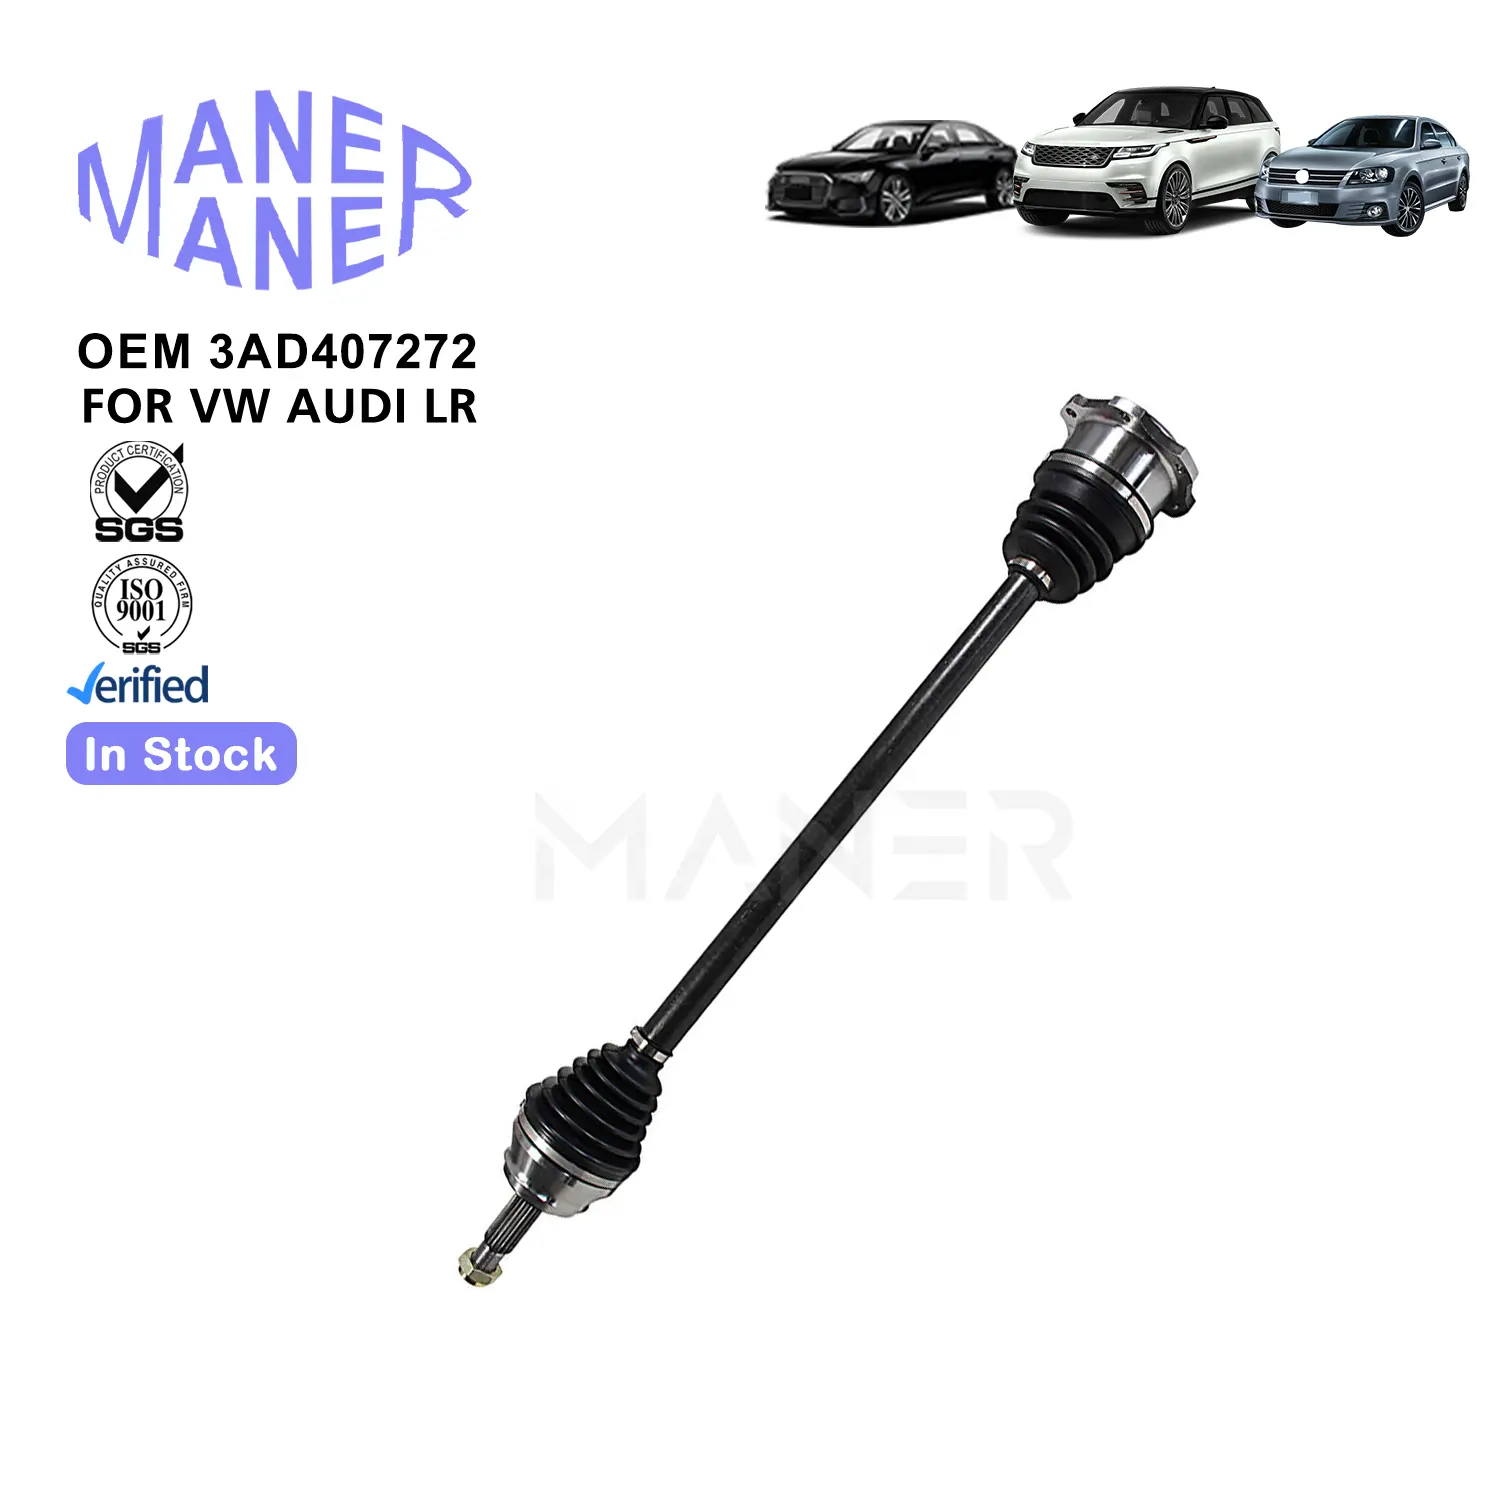 Sistemas de suspensión automática MANER 3AD407272 5Q0407764BX 1K0407272JR 1K0407272KJ eje de transmisión bien hecho de fabricación para VW Audi